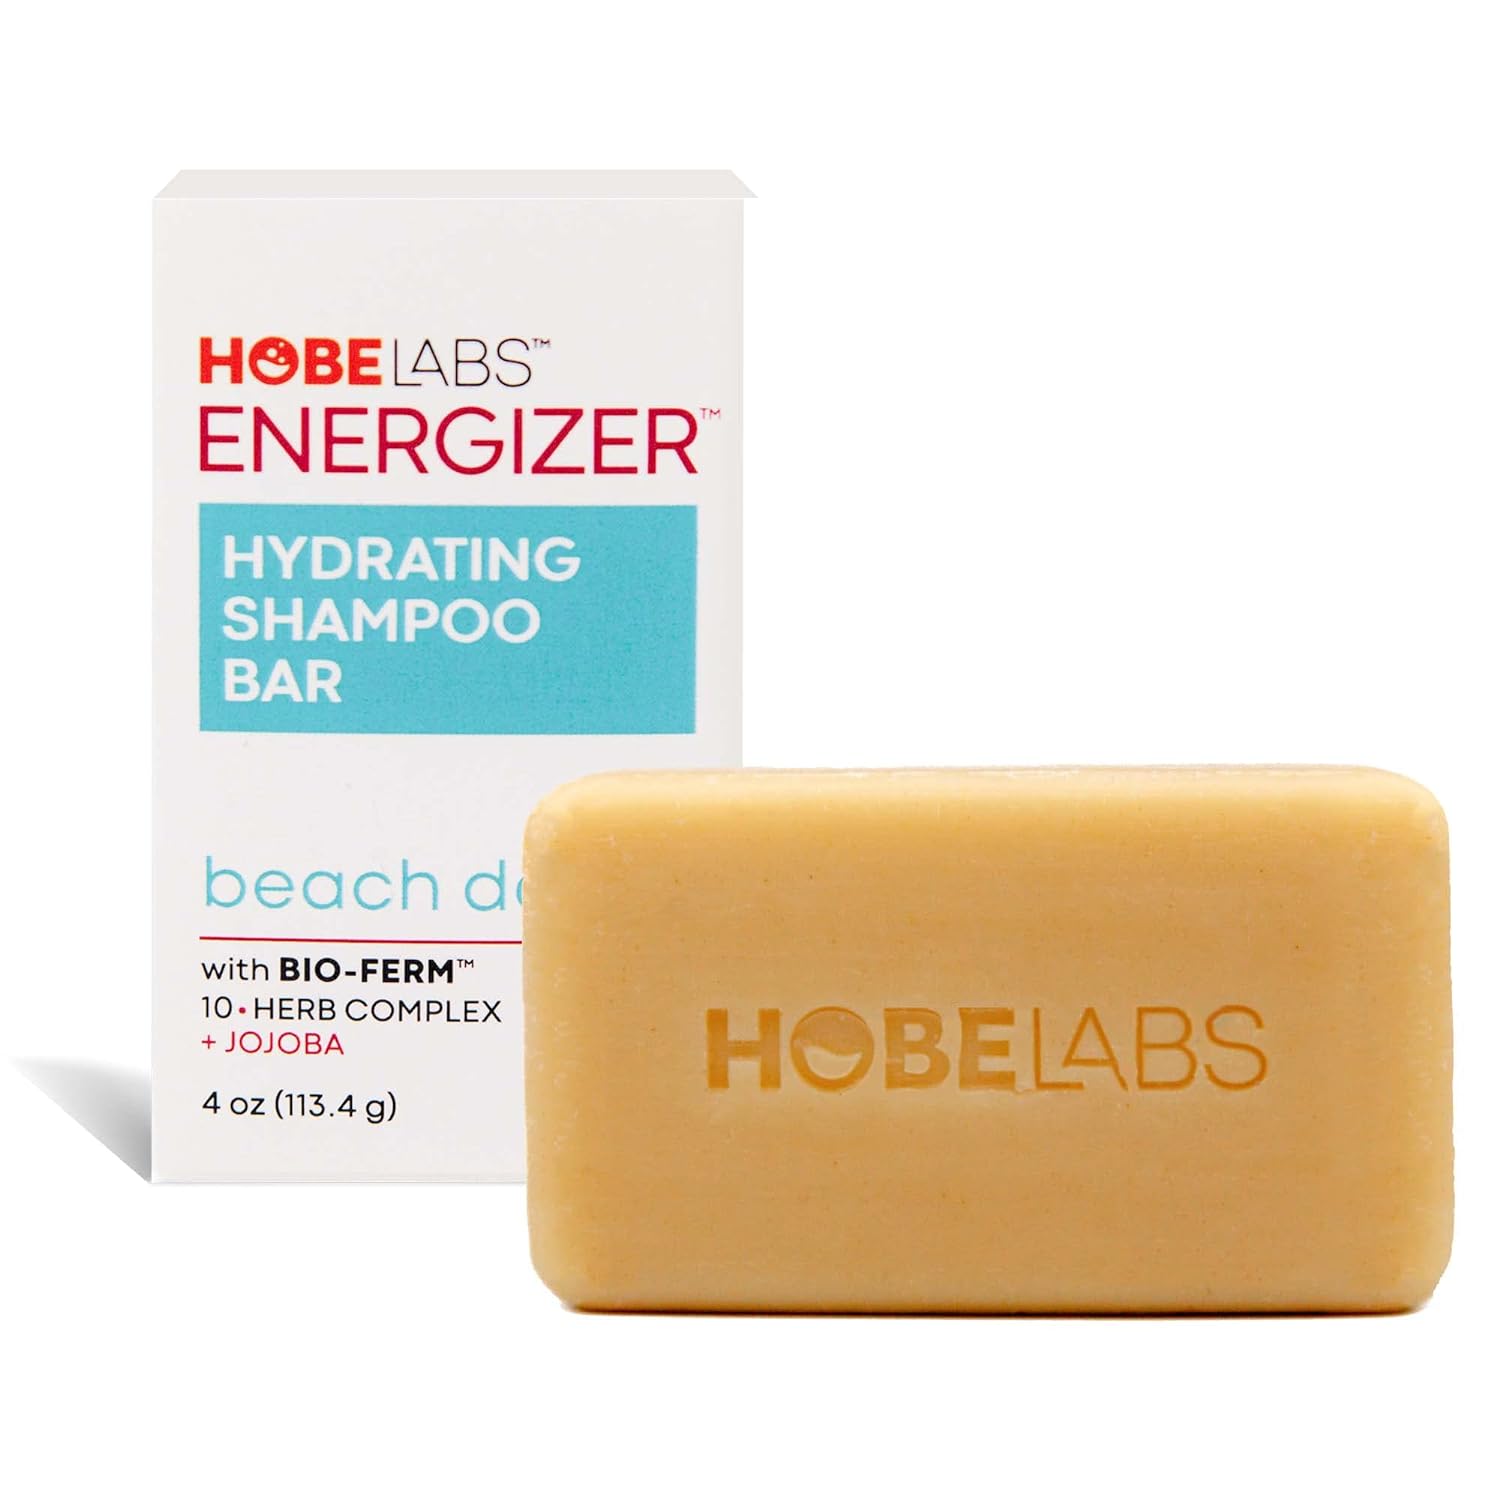 Hobe Labs Beach Day Hydrating Shampoo Bar - Clean & Nourish Your Hair. Bio-Ferm Herbal Complex – Build Strong Hair